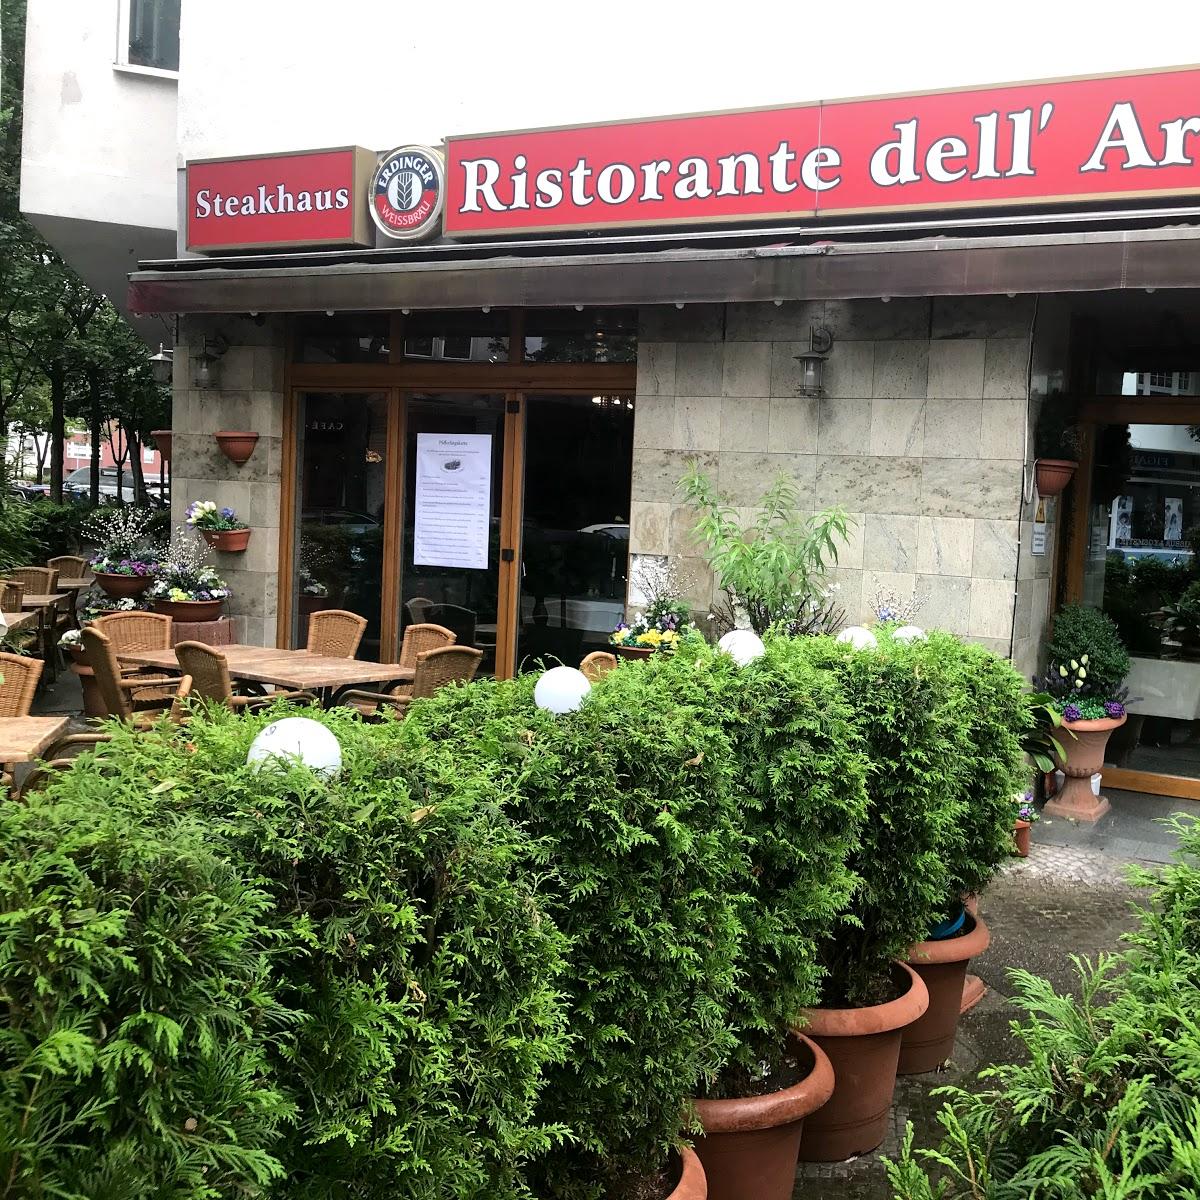 Restaurant "Ristorante dell